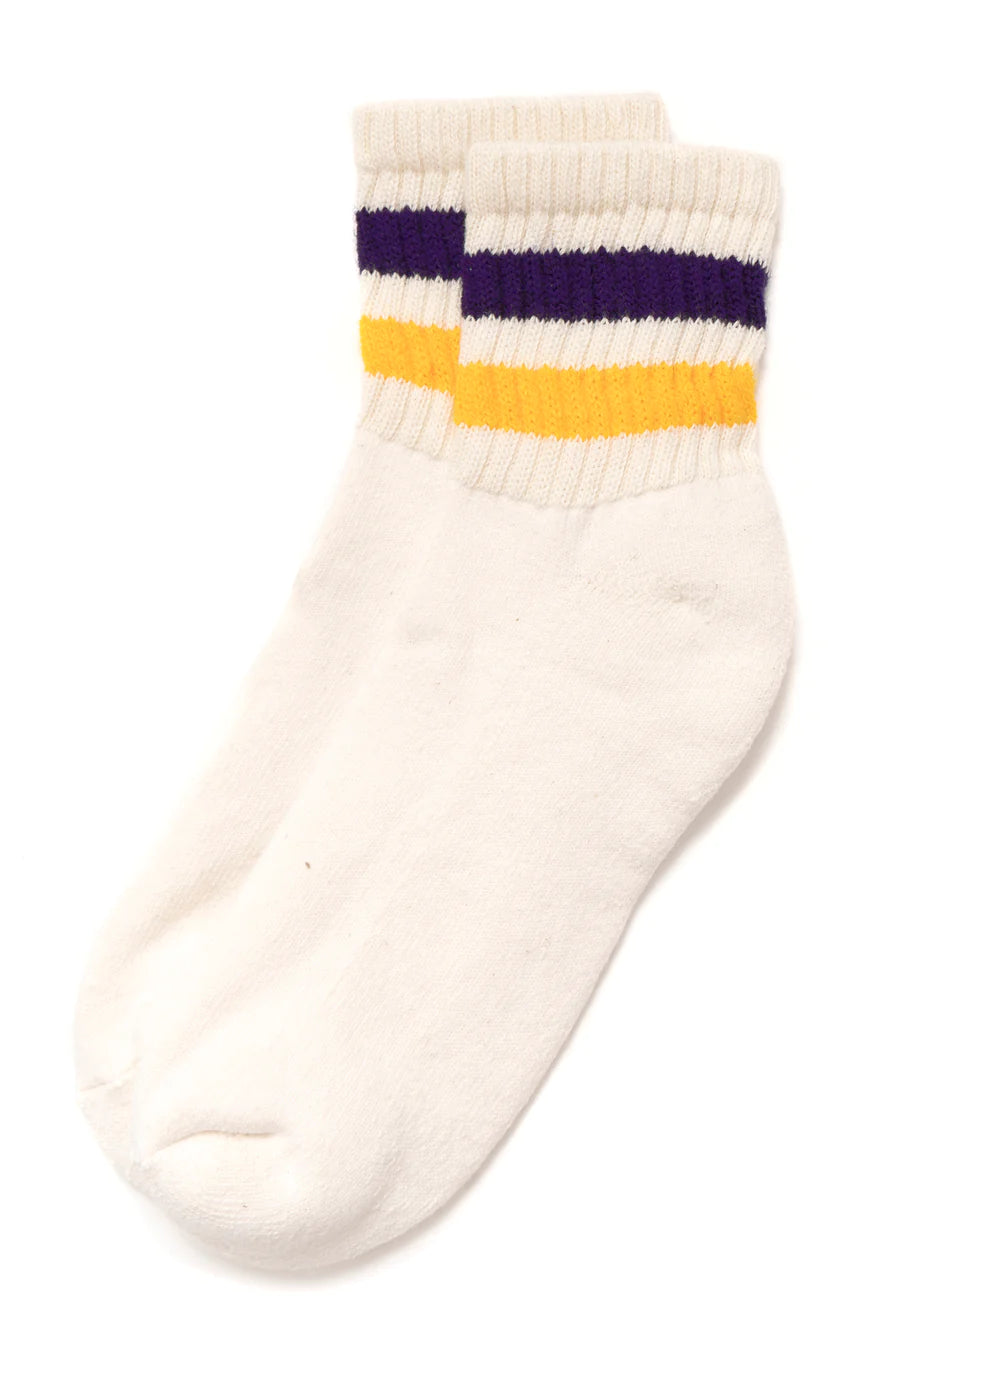 American trench - the retro stripe quarter crew sock  - gold/purple